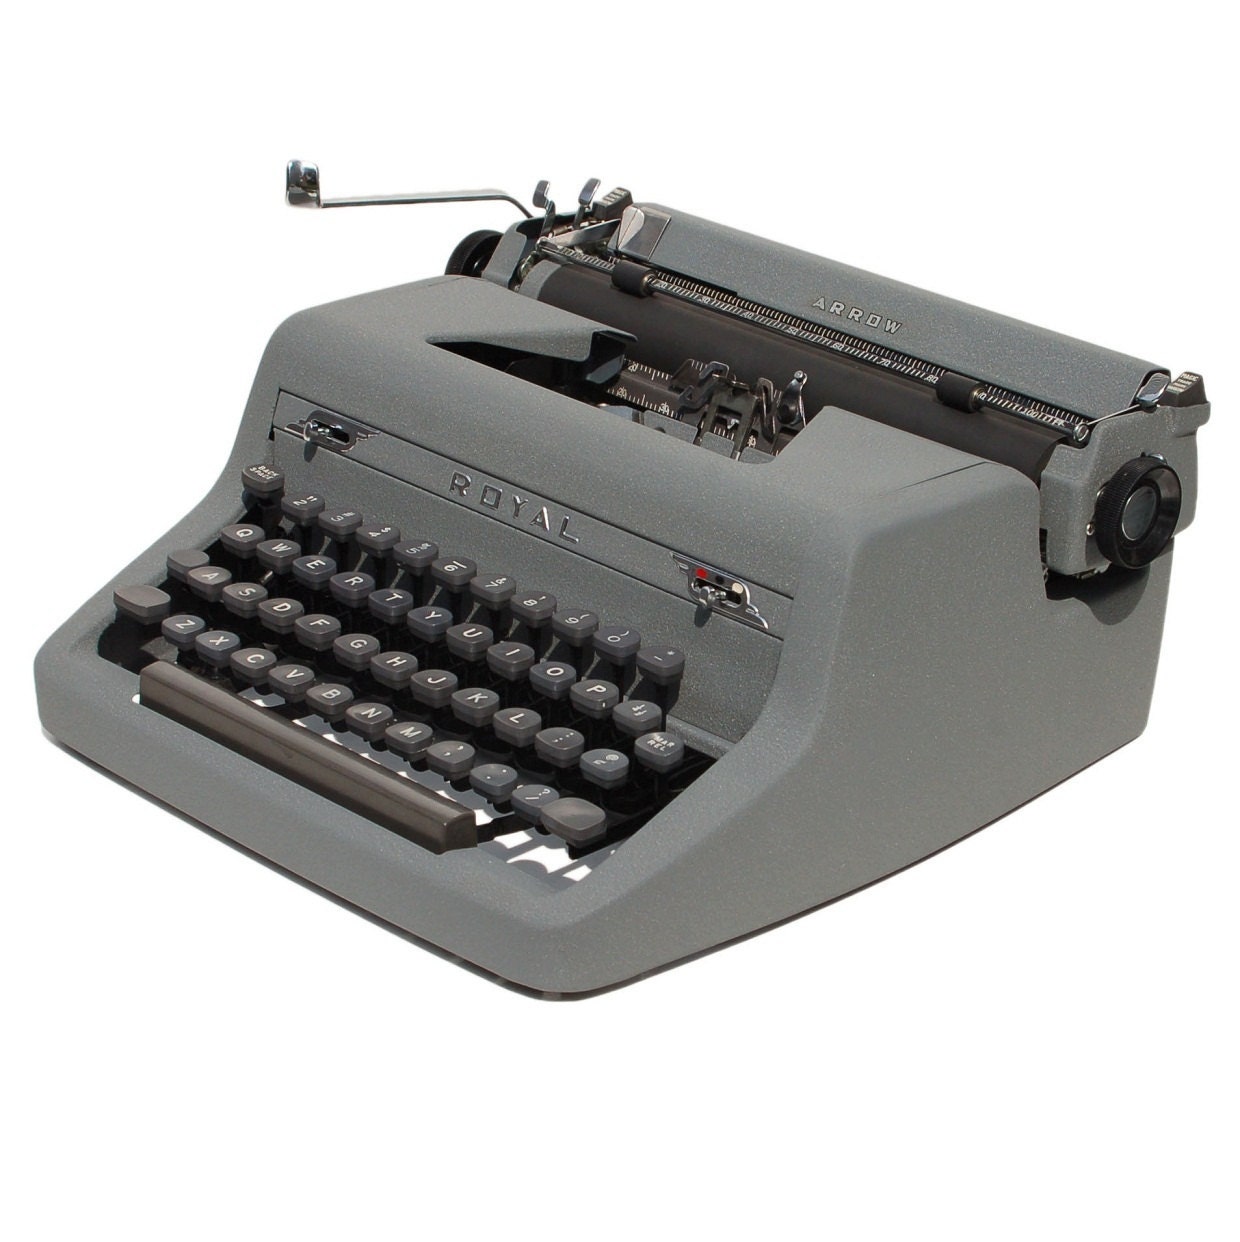 royal arrow typewriter